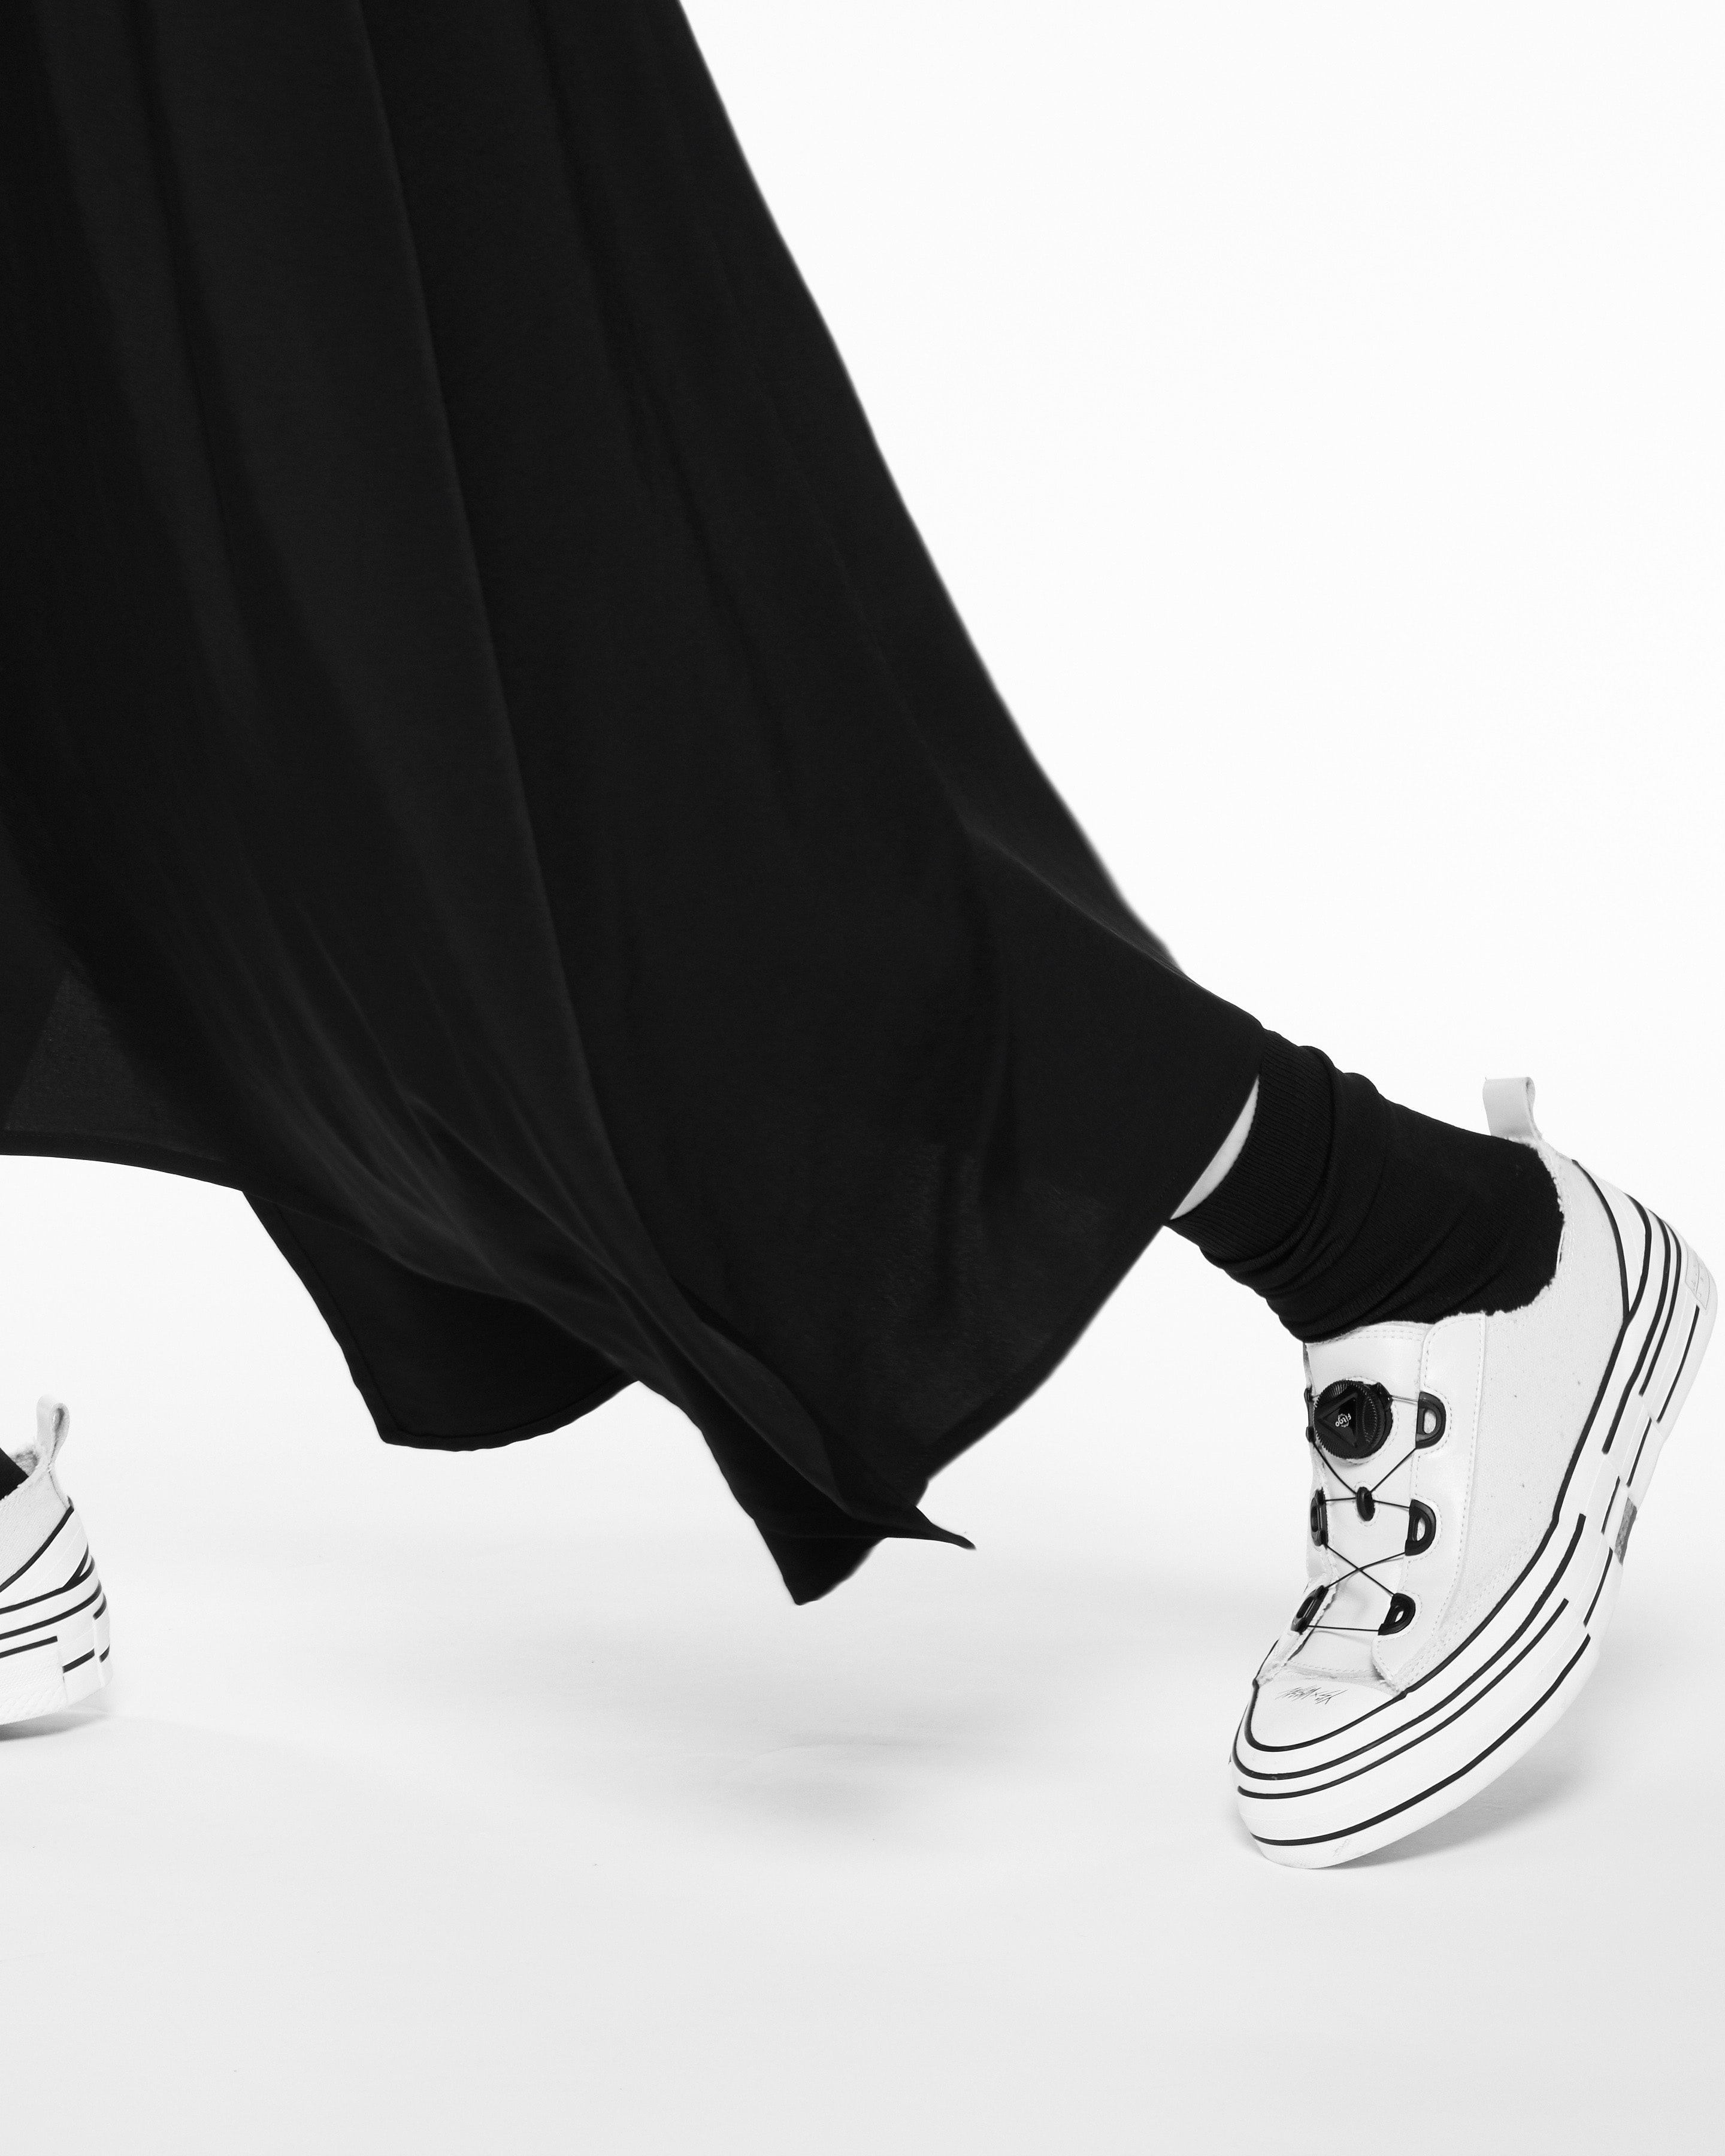 Y's by Yohji Yamamoto 携手 xVESSEL 打造全新联名鞋款系列